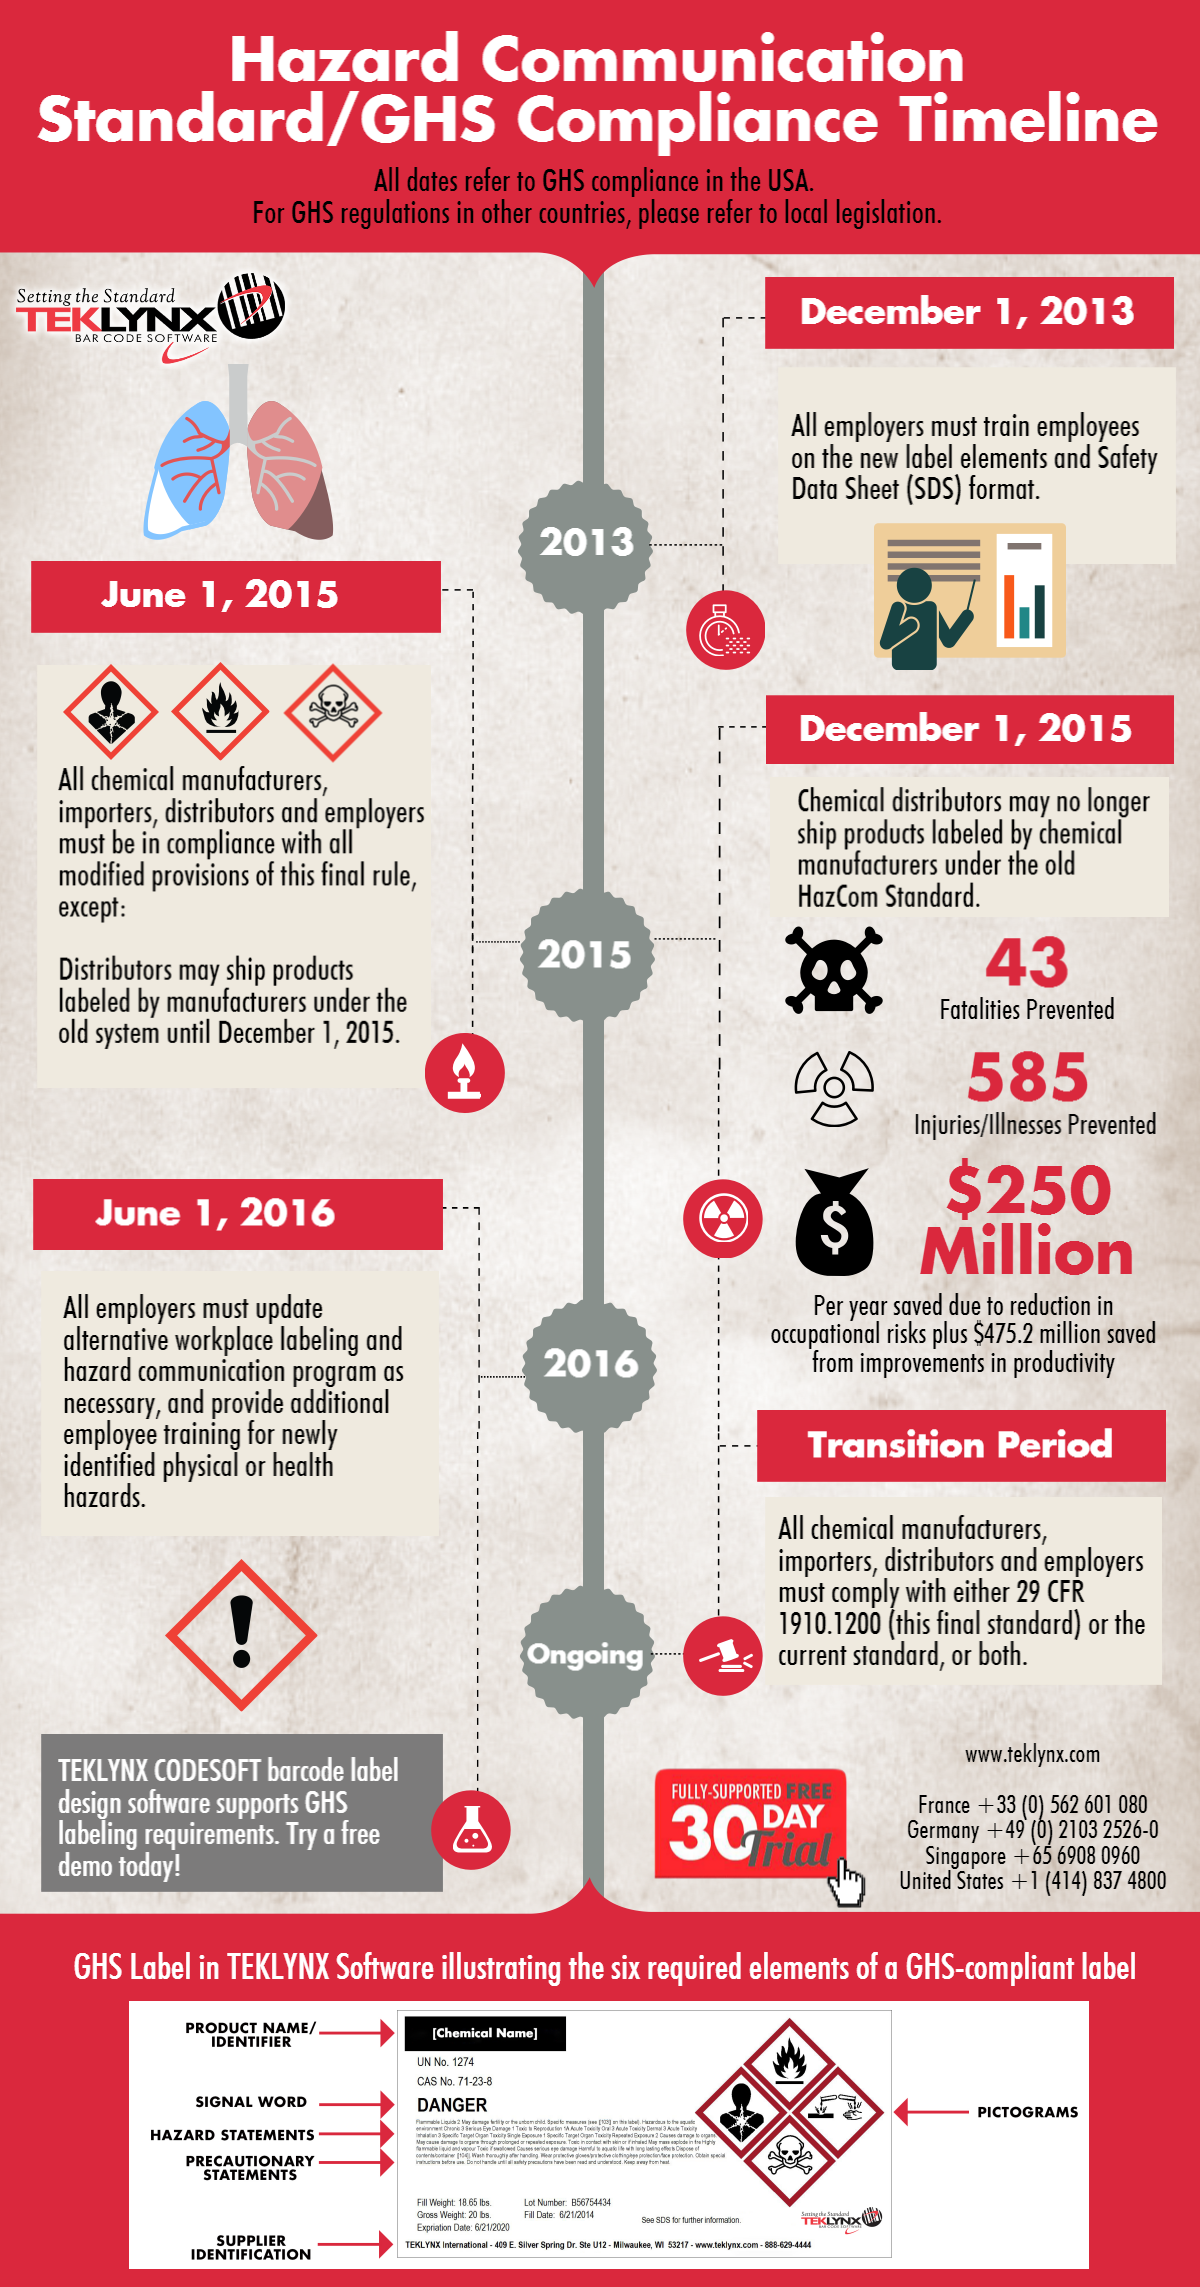 Инфографика: Сроки соблюдения требований GHS для США